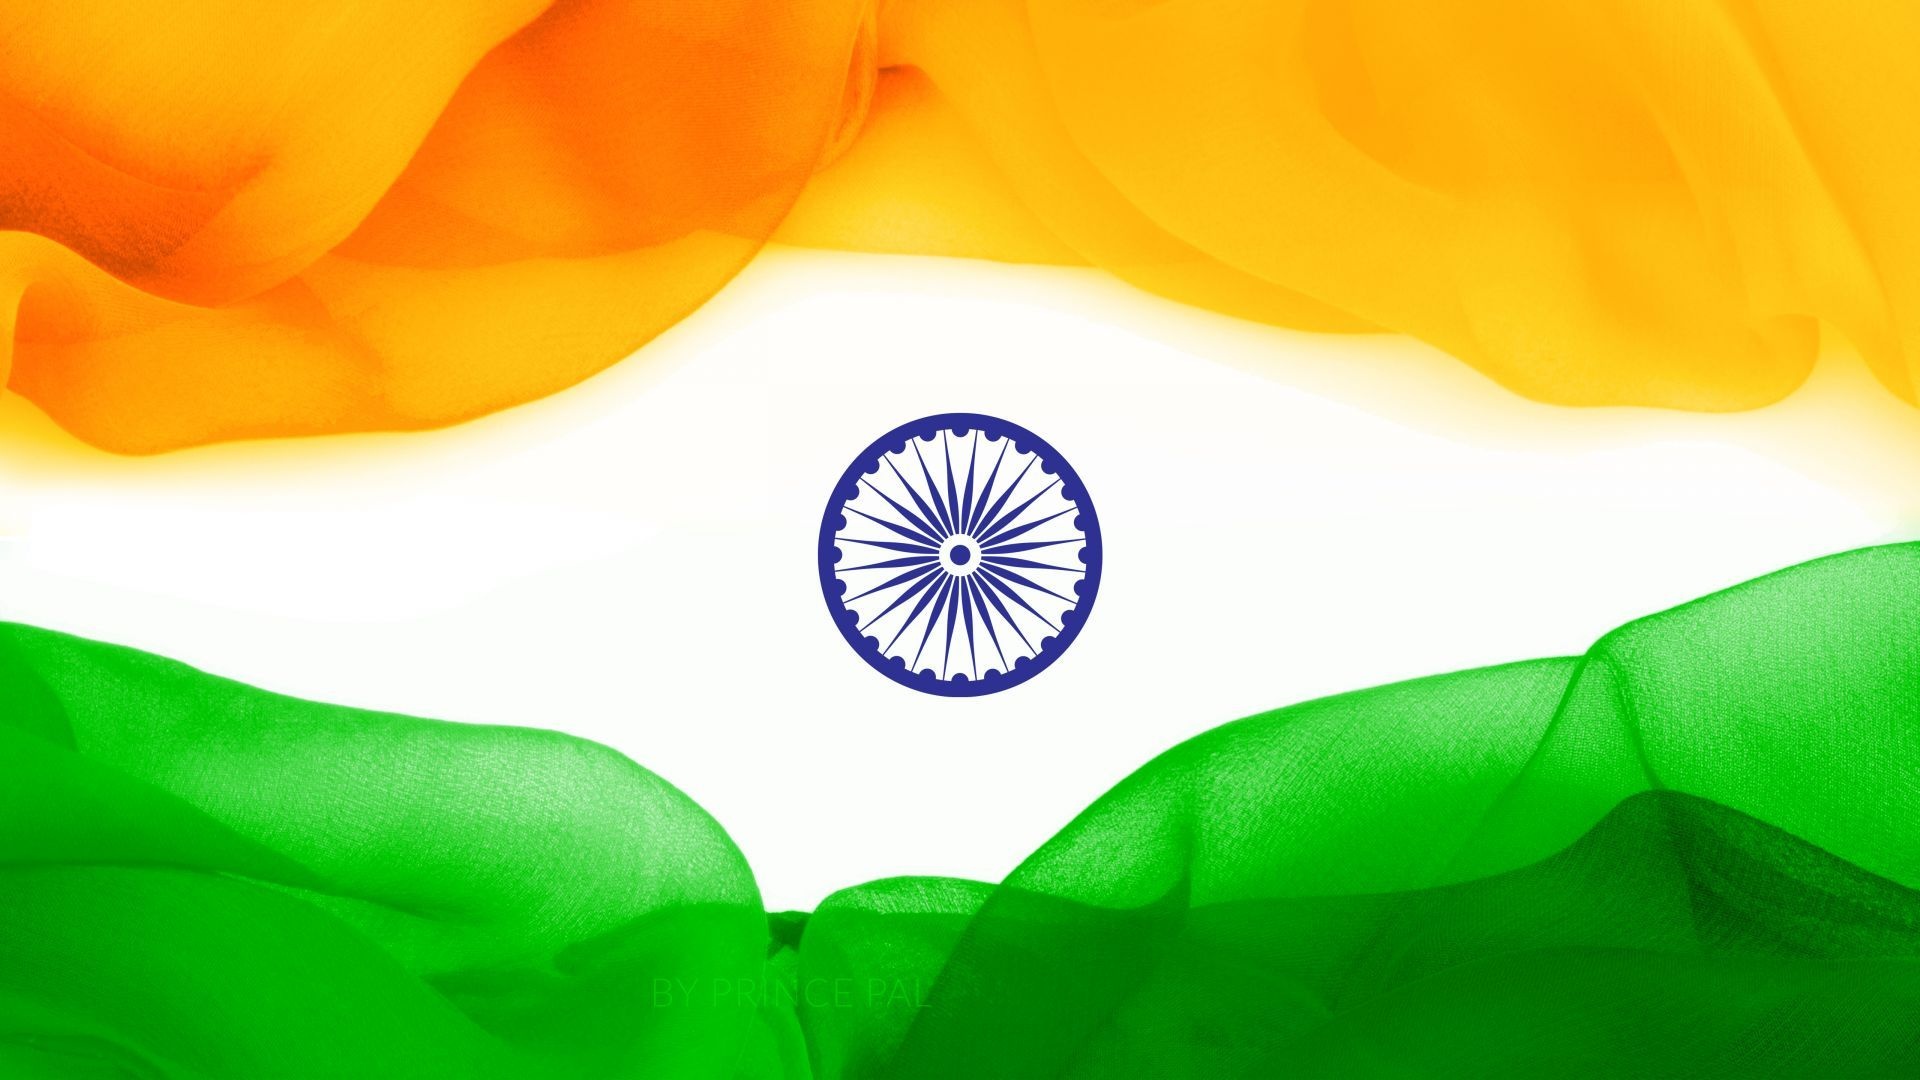 Flag of India, Triumphant emblem, National symbol, Vibrant patriotism, 1920x1080 Full HD Desktop